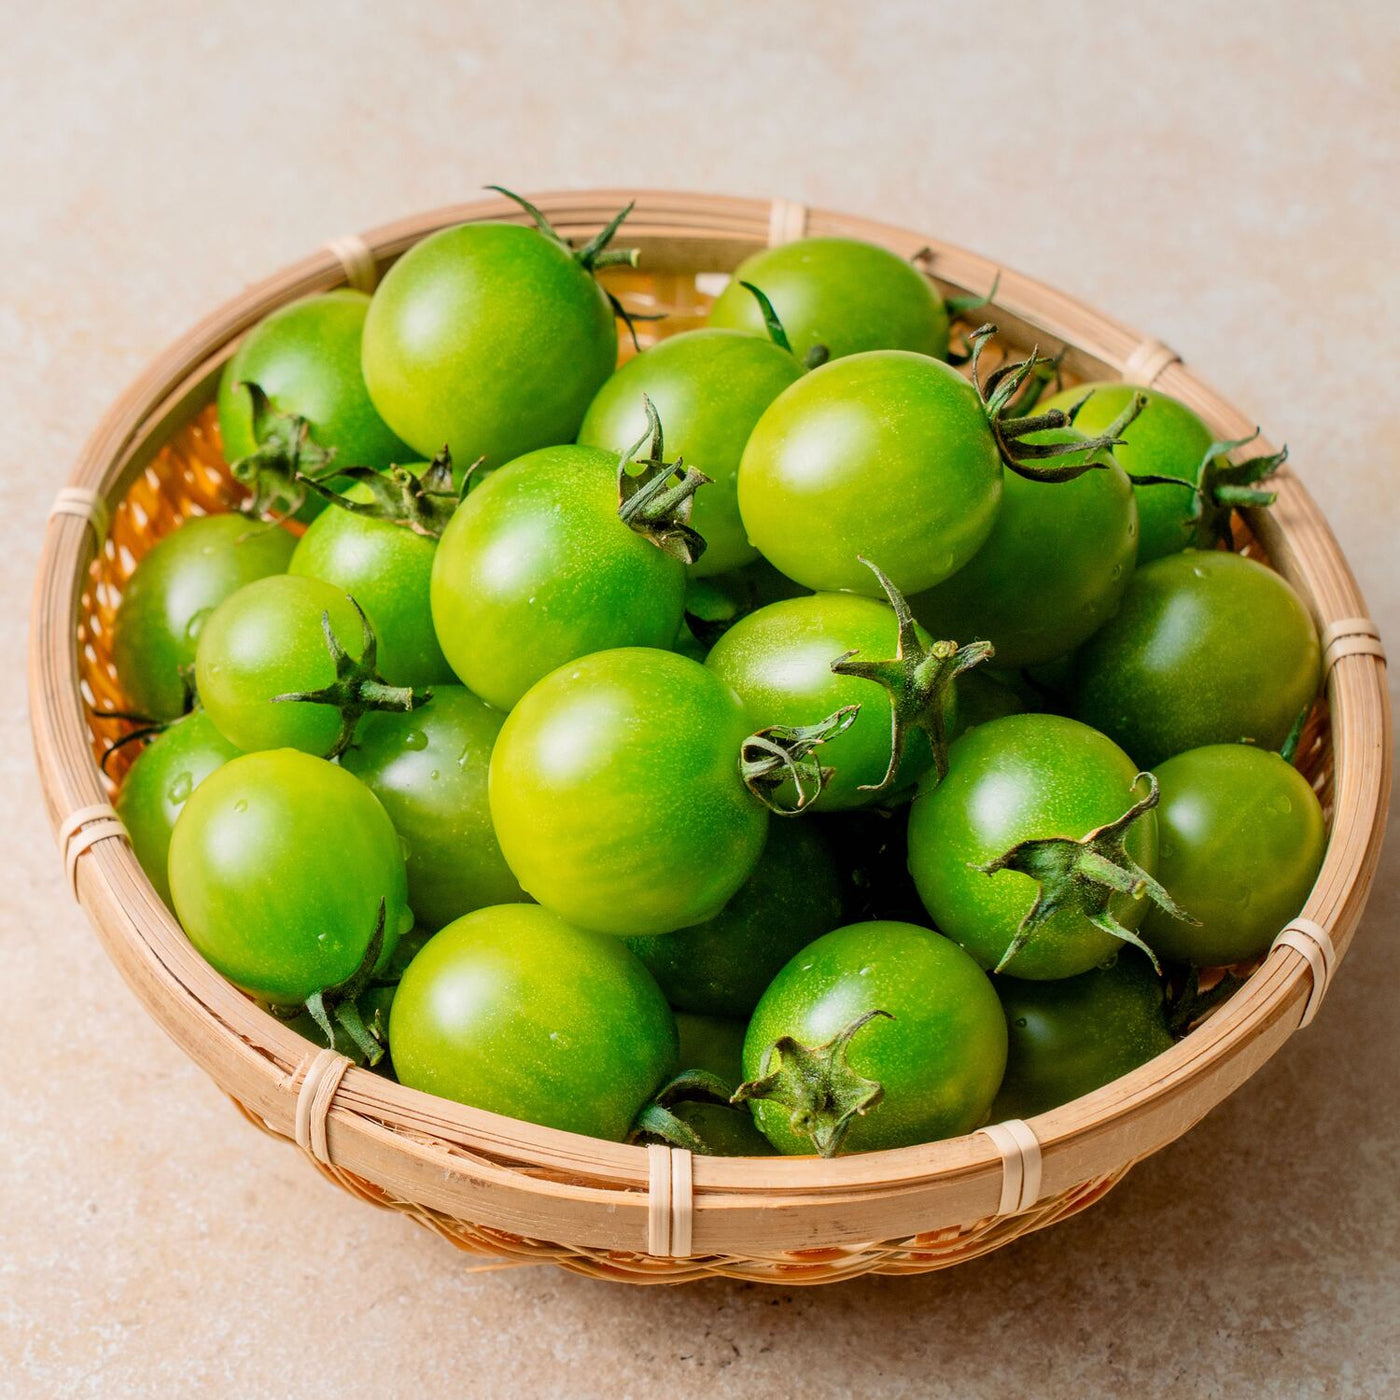 北海道栗山町の自ゆう耕場の緑色のミニトマト,サングリーン